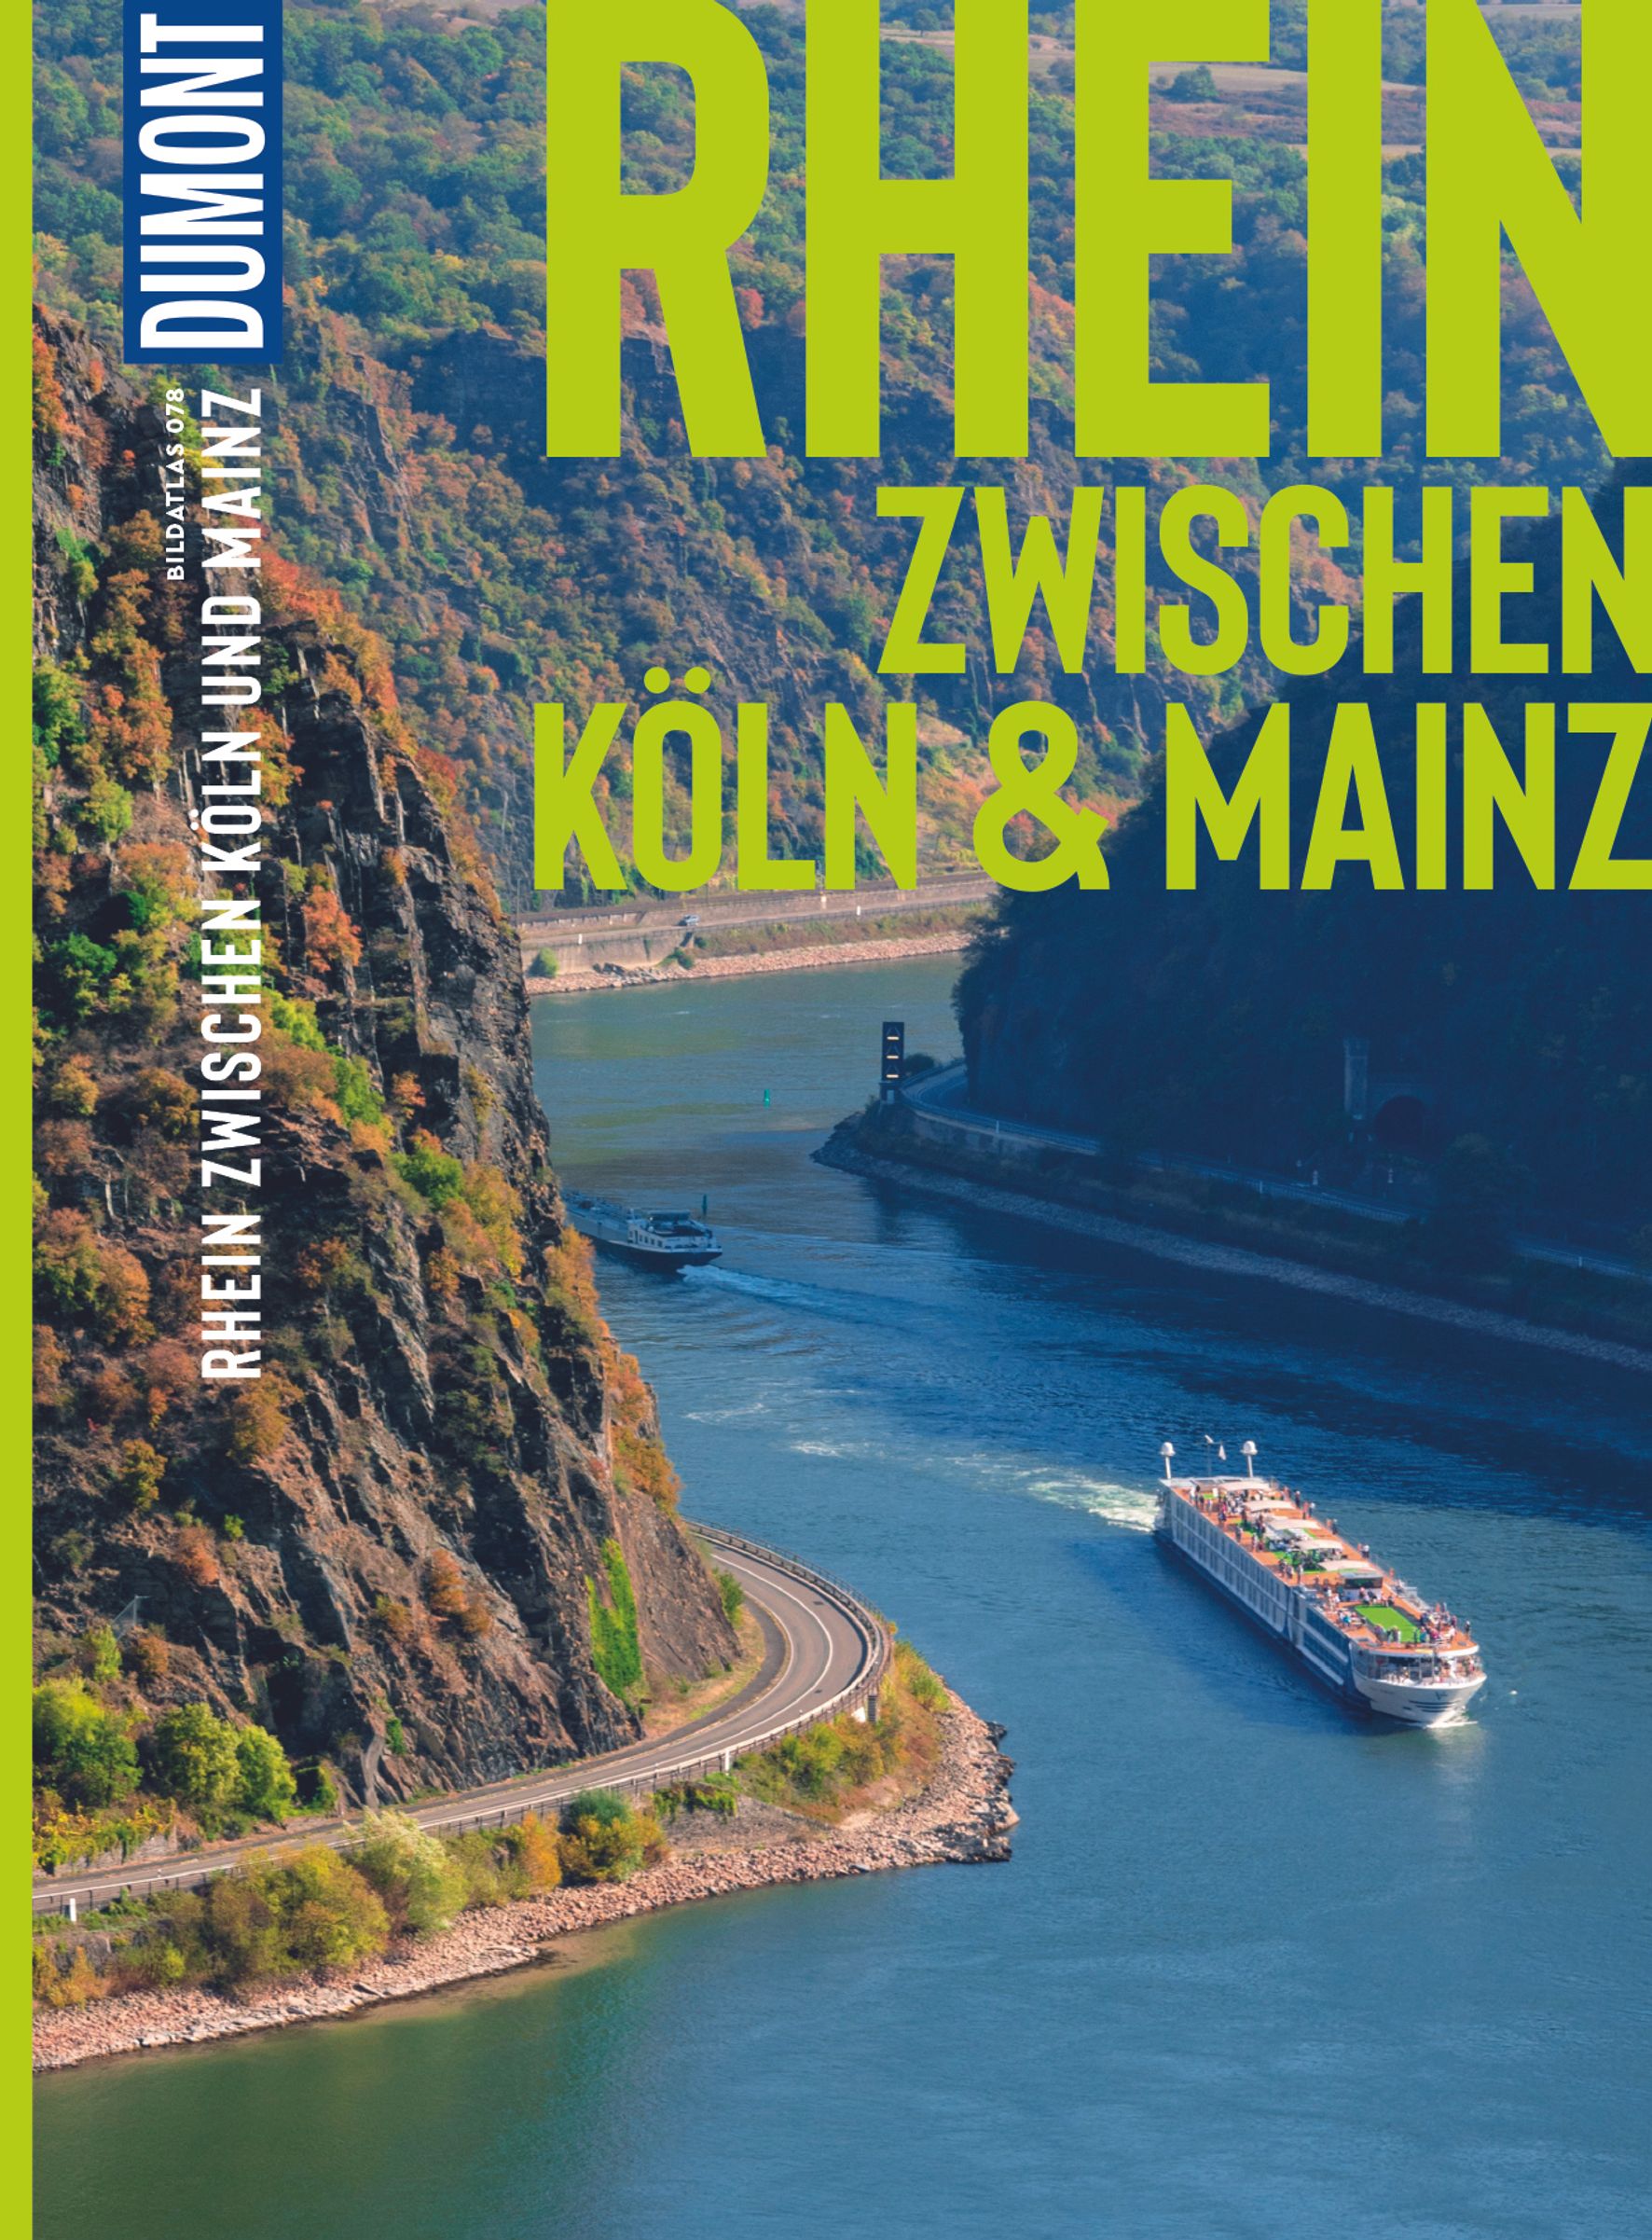 MAIRDUMONT Rhein, Zwischen Köln & Mainz